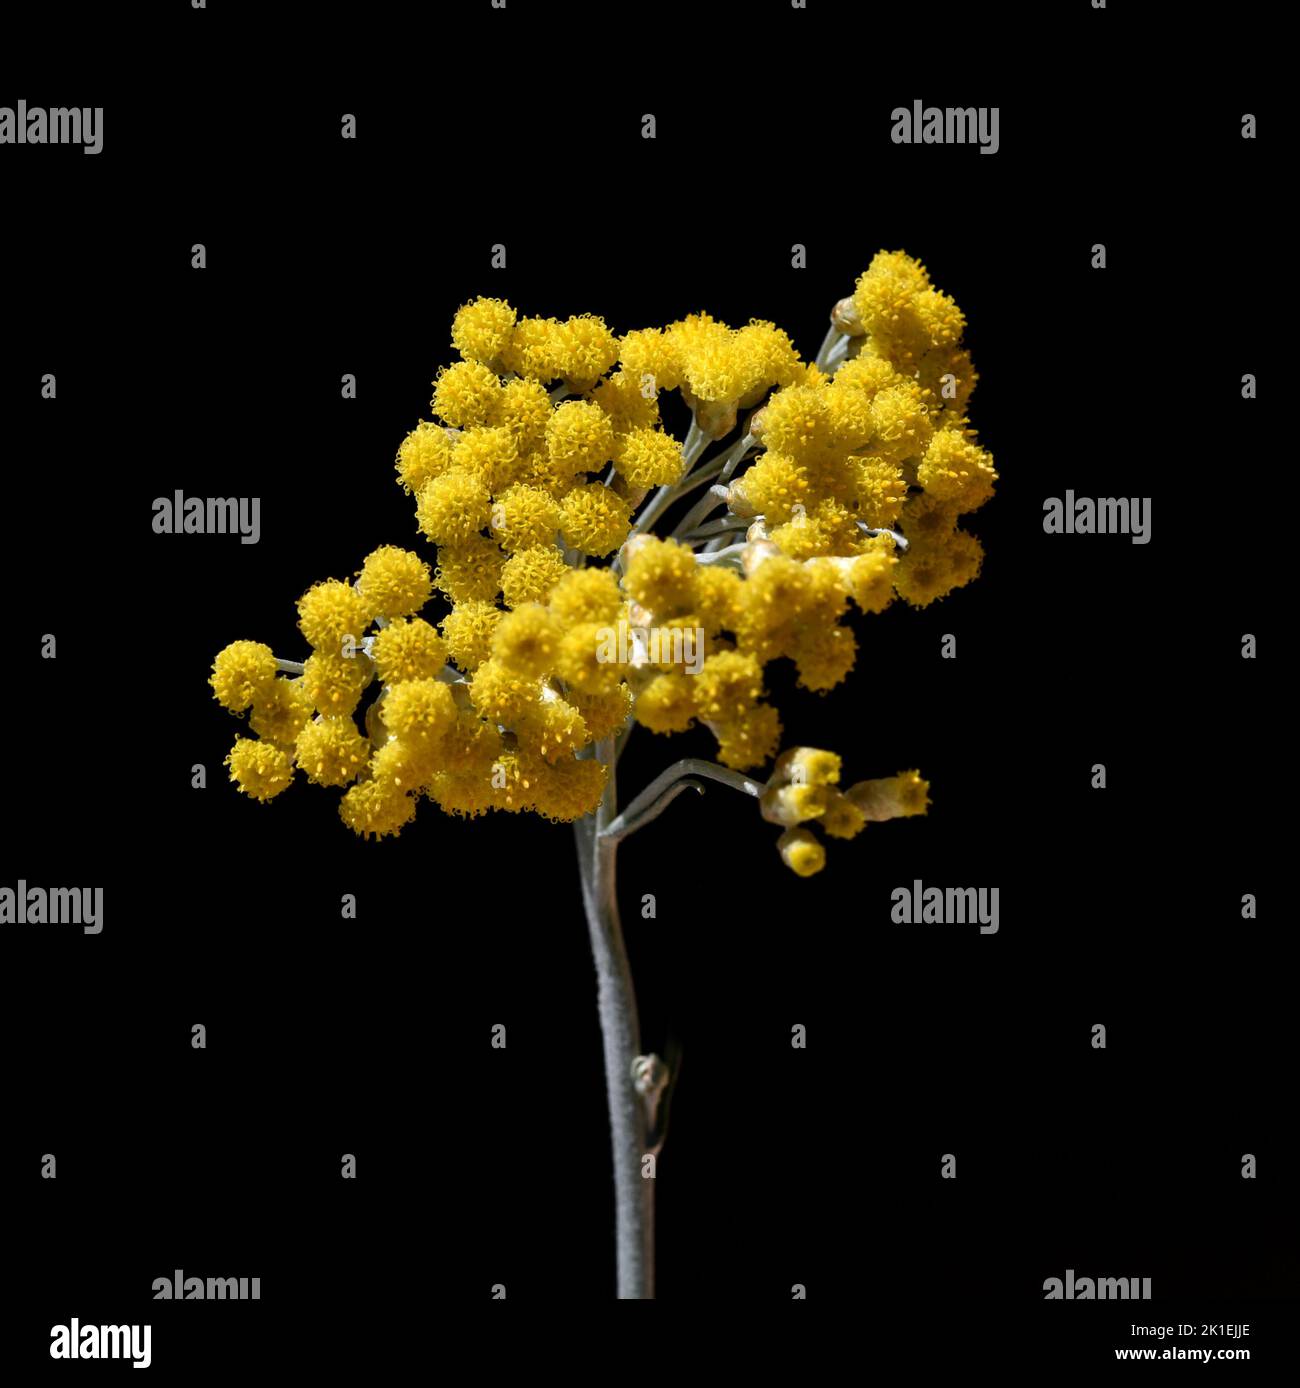 L'erba di curry, Helichrysum italicum, è un'importante pianta medicinale e una pianta profumata con fiori gialli ed è utilizzata anche come spezia in cucina. Foto Stock